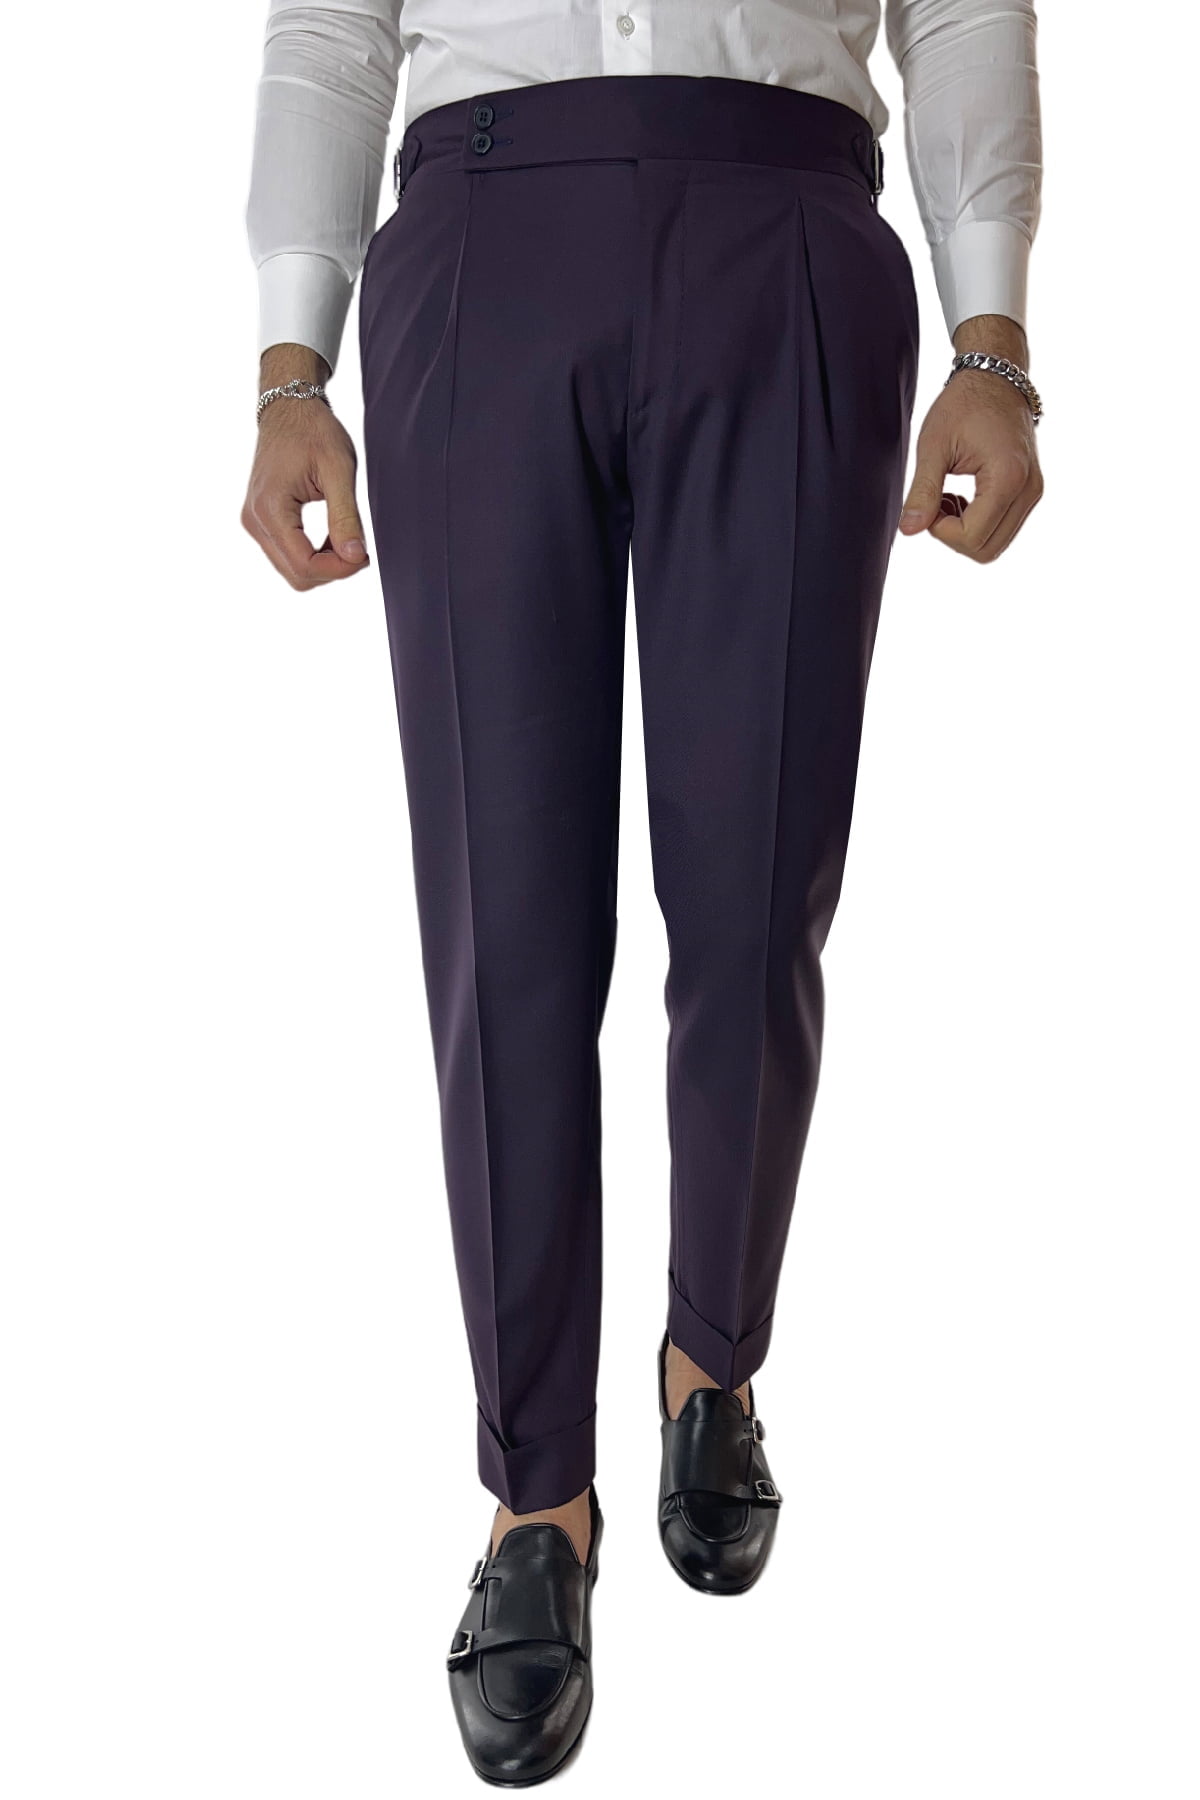 Pantalone uomo viola in fresco lana 120's Holland & Sherry vita alta con pinces fibbie laterali e risvolto 4cm